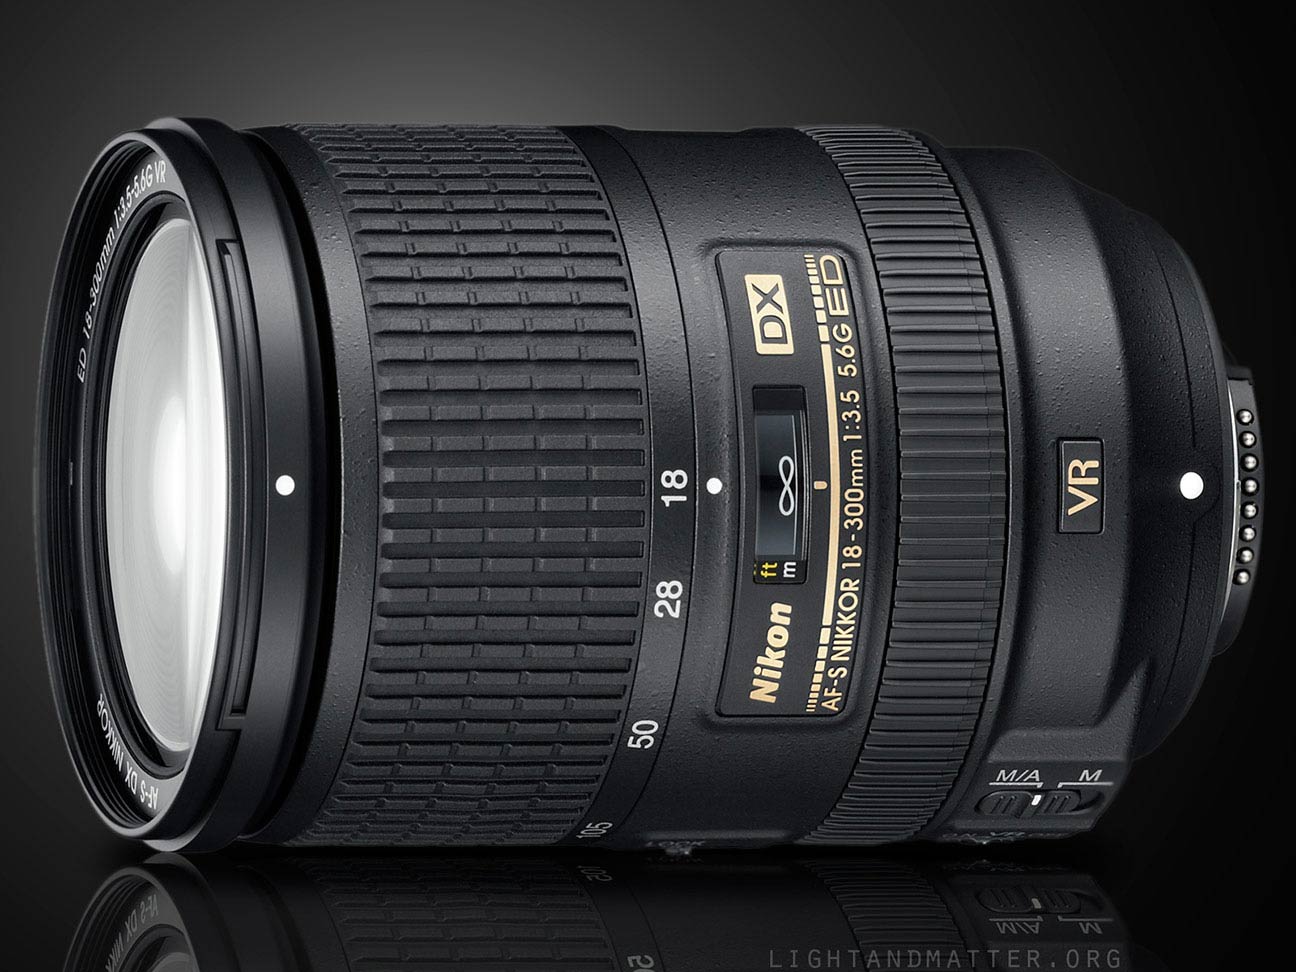 Nikon 18-300mm f/3.5-5.6 VR lens